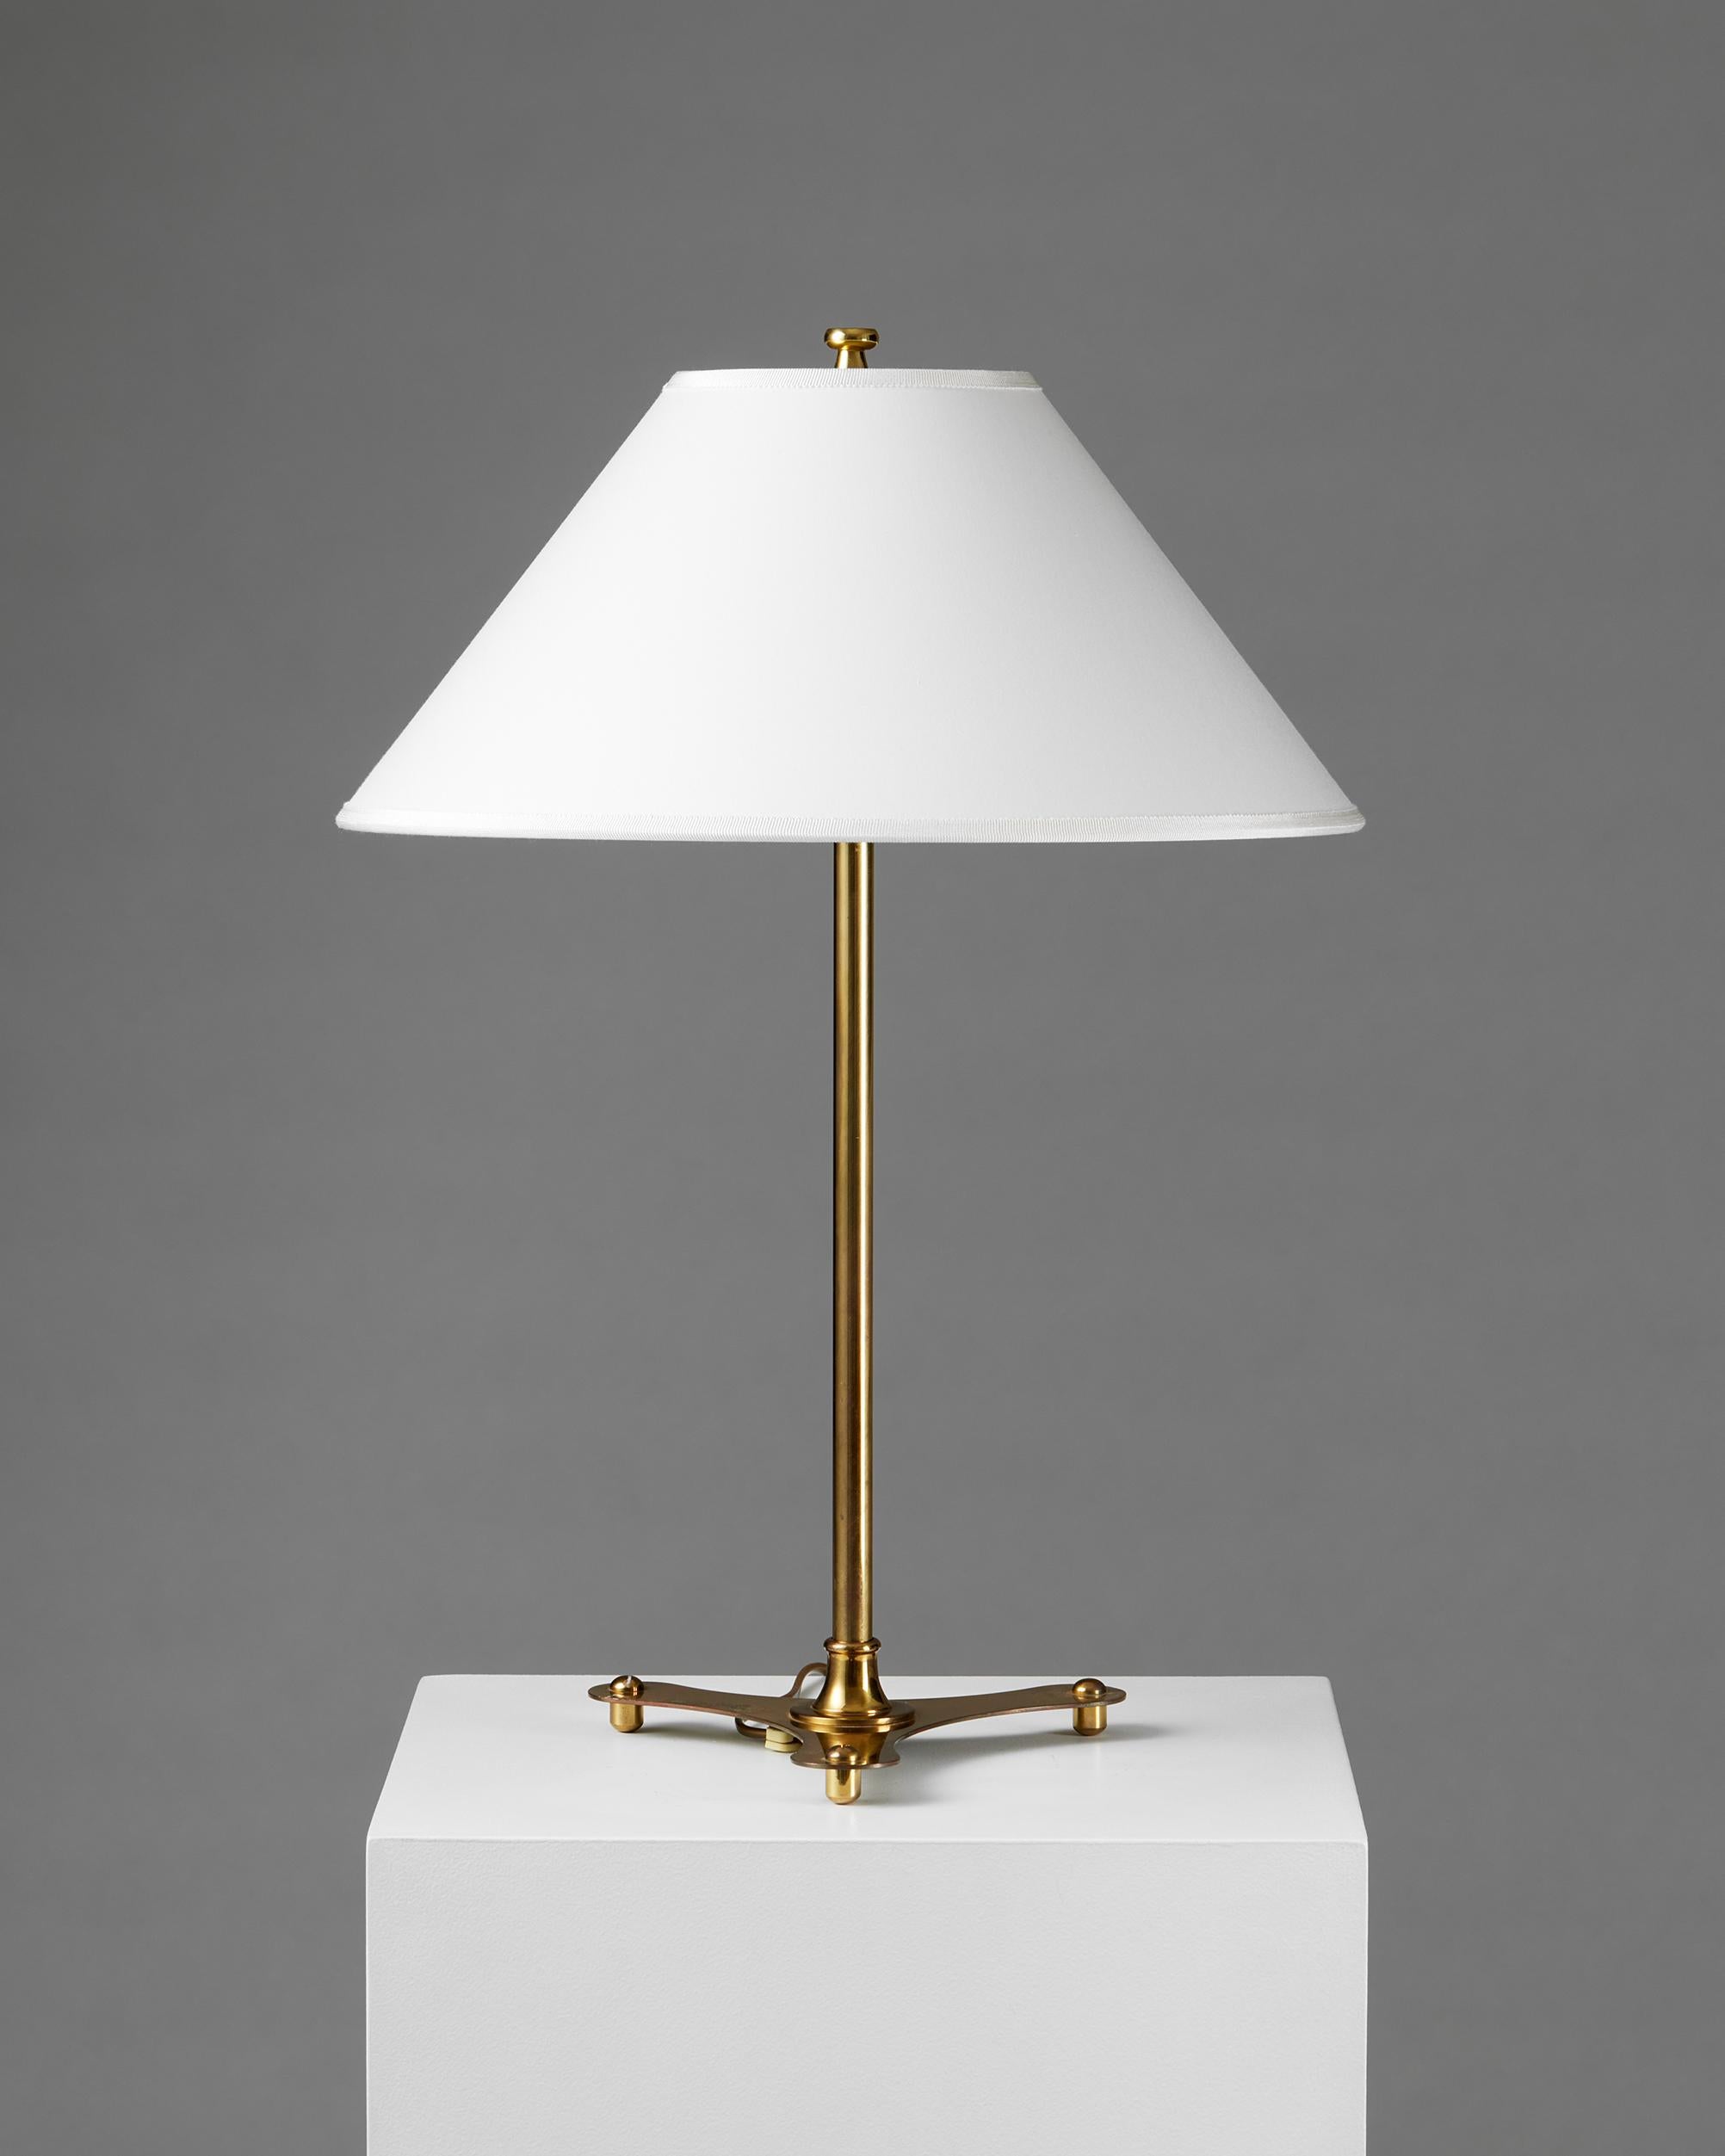 Lampe de table modèle 2552 conçue par Josef Frank pour Svenskt Tenn, Suède, années 1950

Estampillé.

Laiton et textile.

Josef Frank était un véritable Européen, mais aussi un pionnier de ce qui allait devenir le design suédois classique du XXe